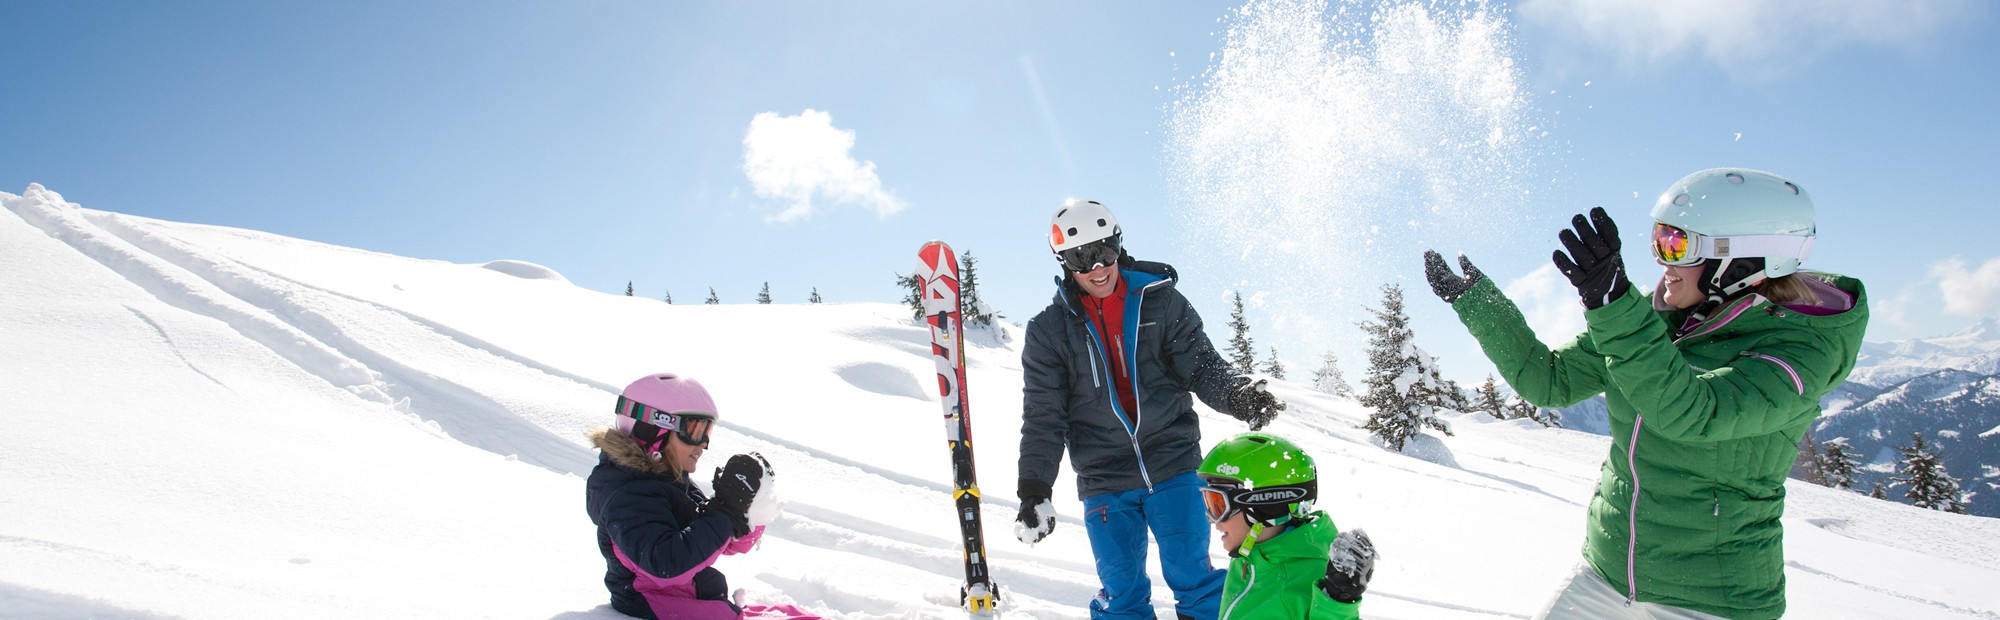 Skiurlaub mit der ganzen Familie in der Skiregion Ski amadé in Salzburg © TVB Wagrain Kleinarl